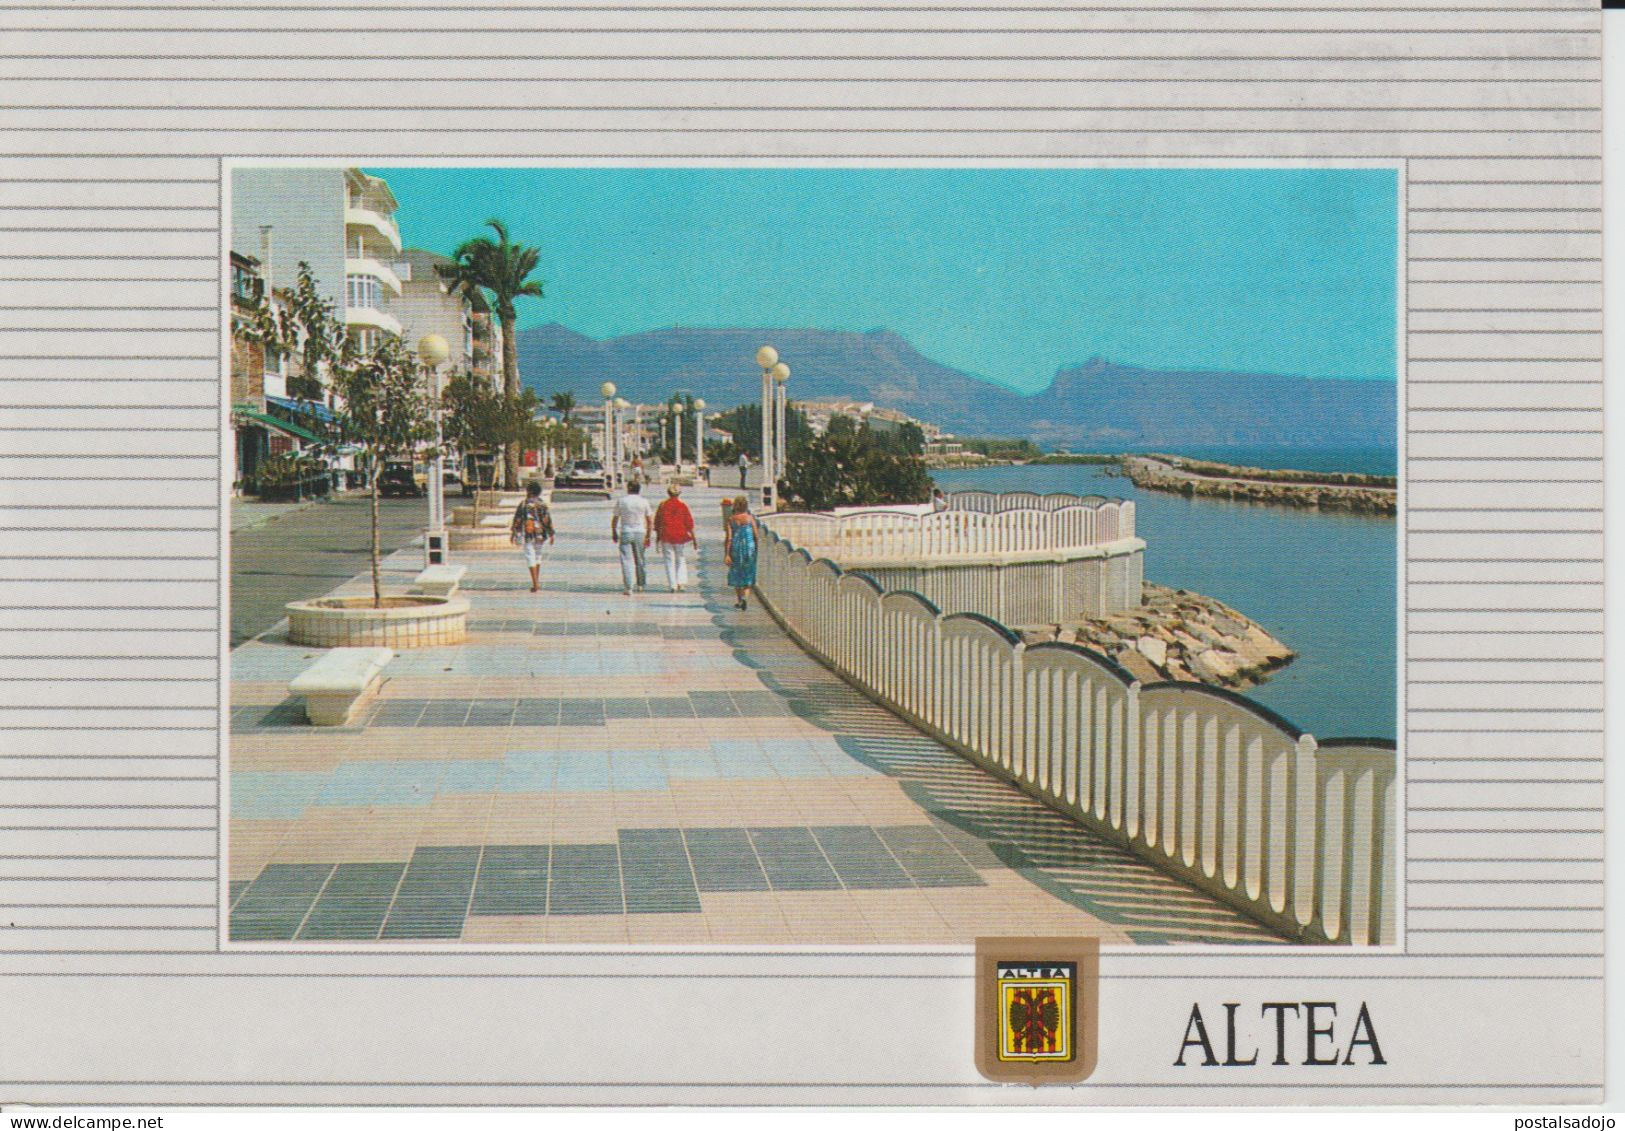 (E61) ALTEA. ALICANTE - Alicante